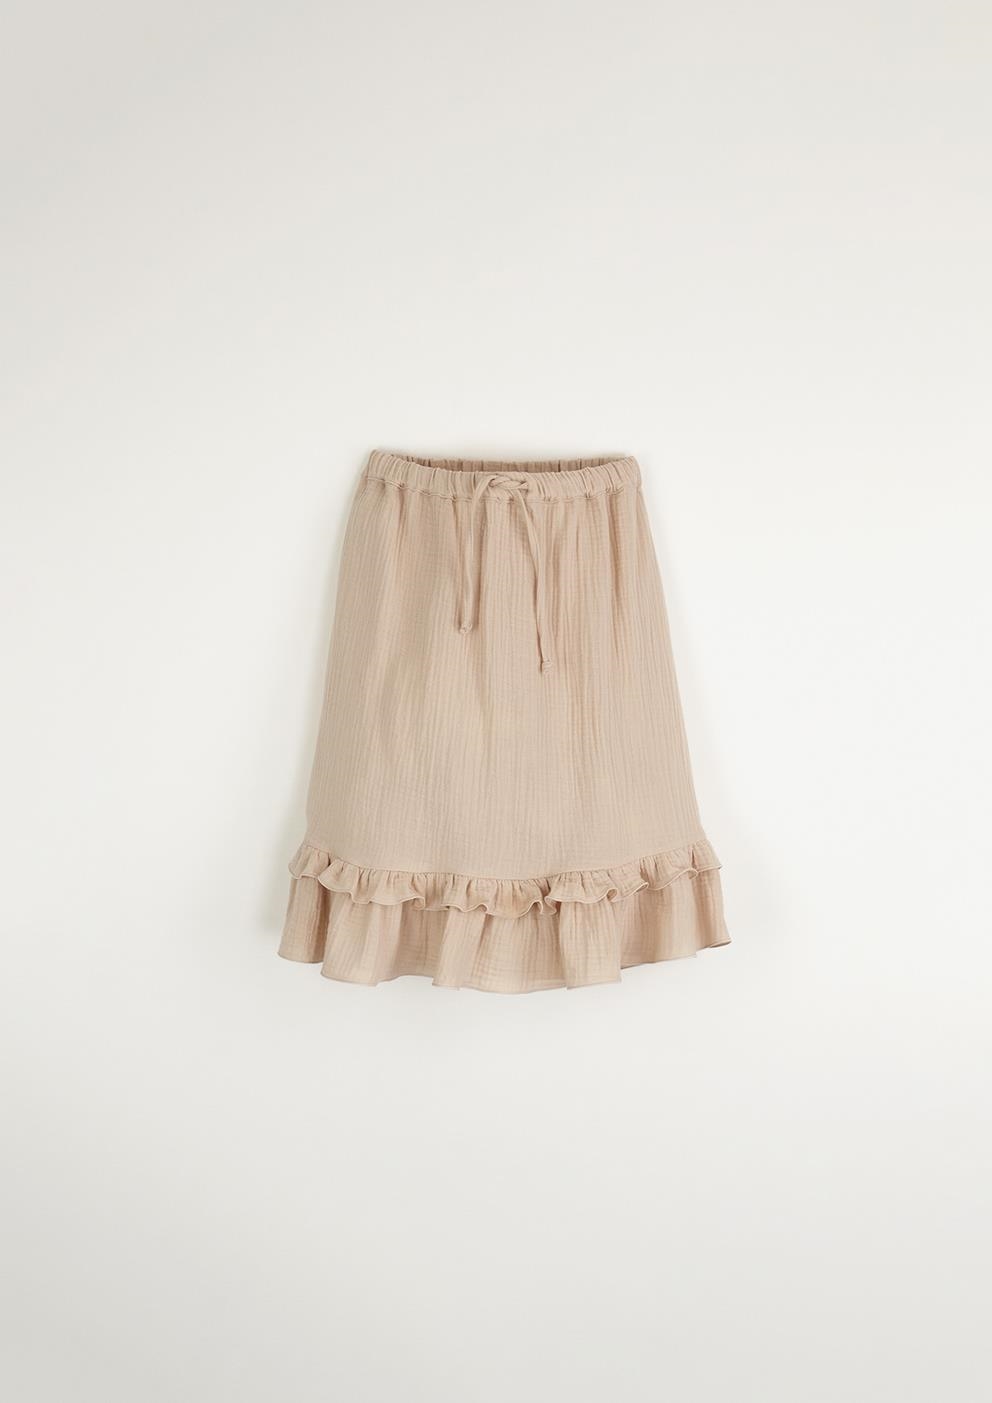 Mod.18.1 Pink organic skirt | SS23 Mod.18.1 Pink organic skirt